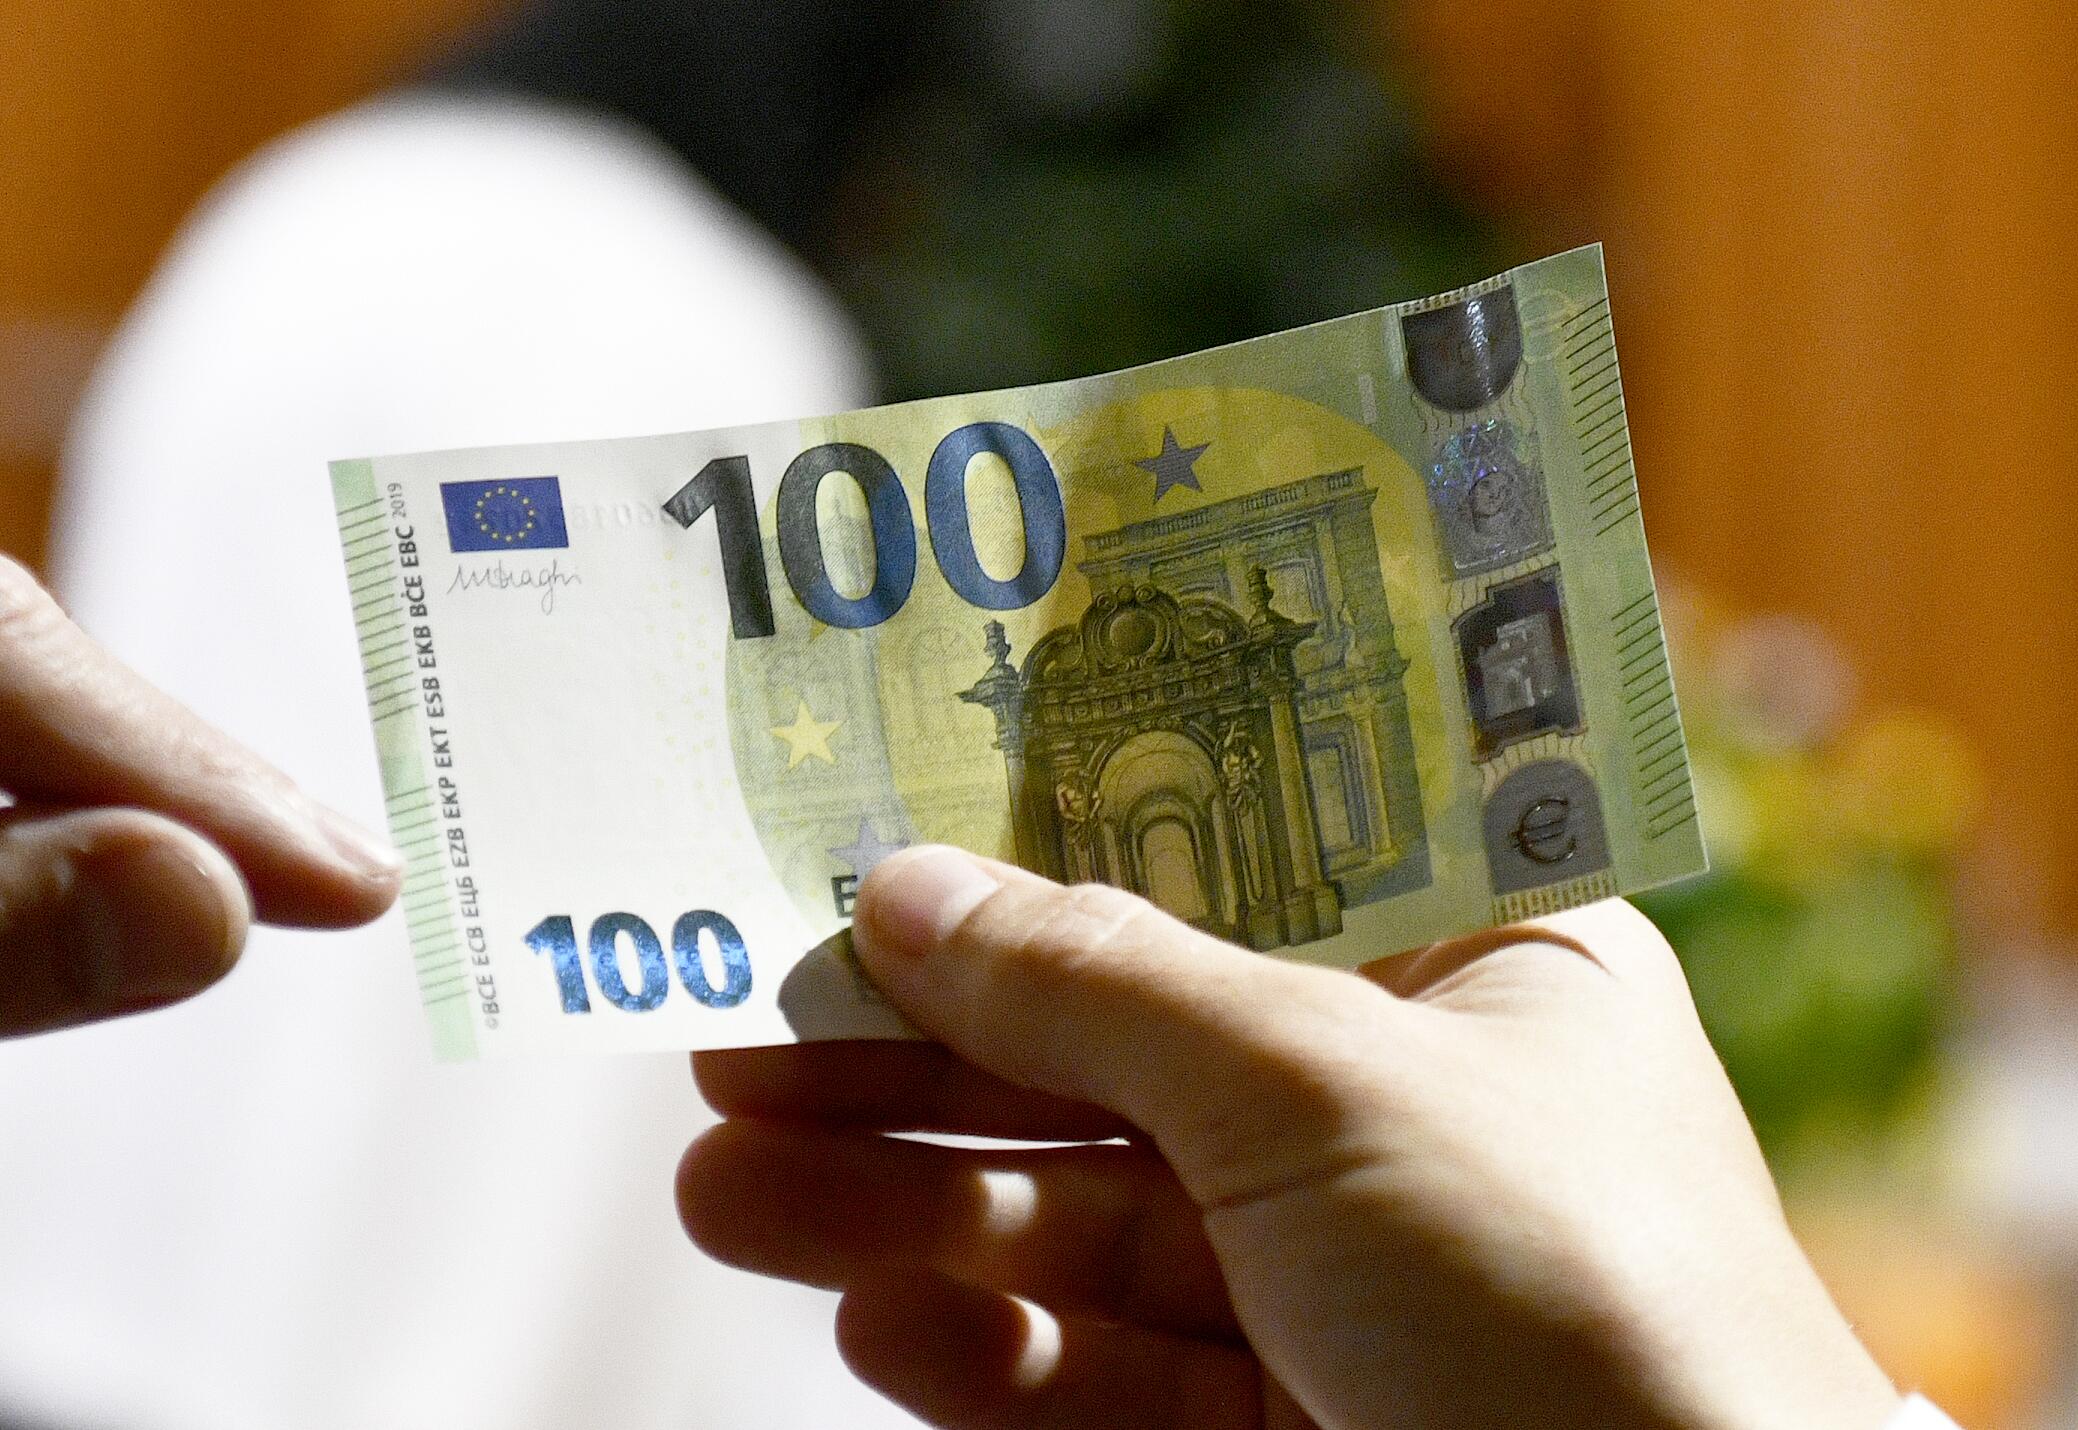 ЕЦБ представил новые банкноты номиналом €100 и €200